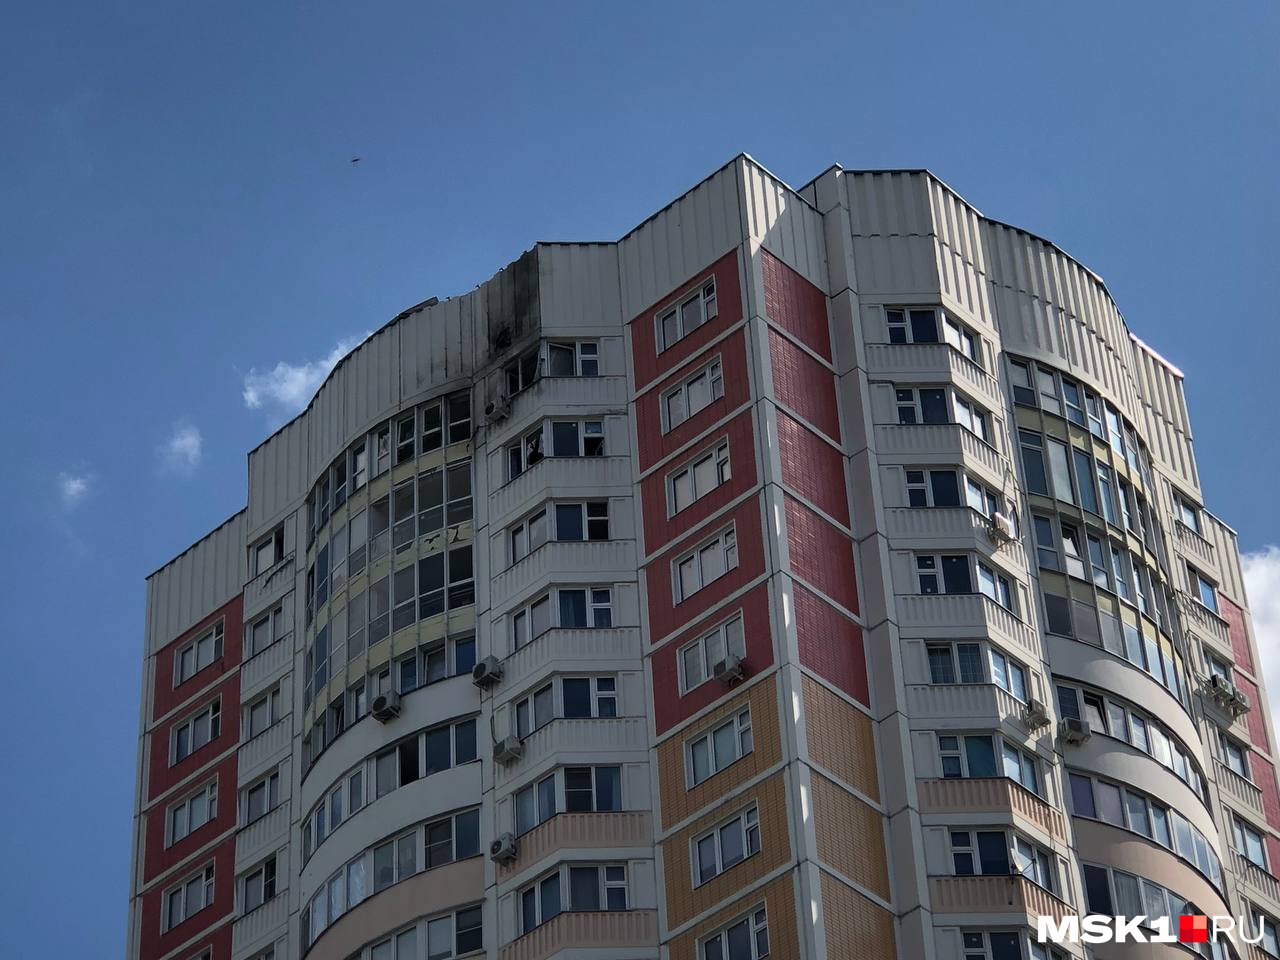 Жители пострадавших домов начали возвращаться в квартиры. Первая массовая атака дронов на Москву: онлайн-трансляция